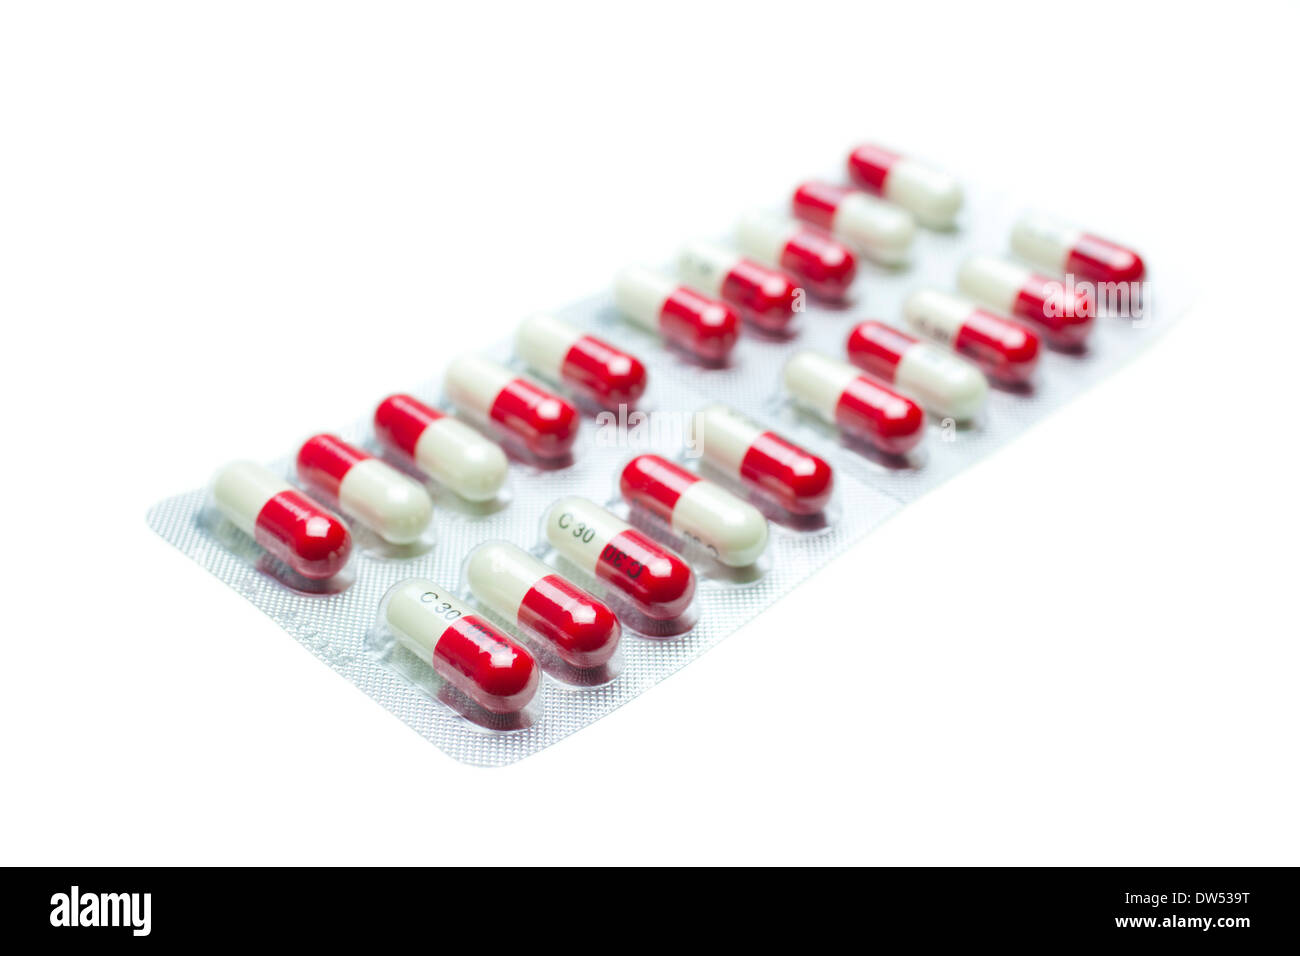 Nahaufnahme von einer Blisterverpackung mit roten und weißen Kapseln eines Schmerzmittels Paracetamol und Codein auf weißem Hintergrund Stockfoto